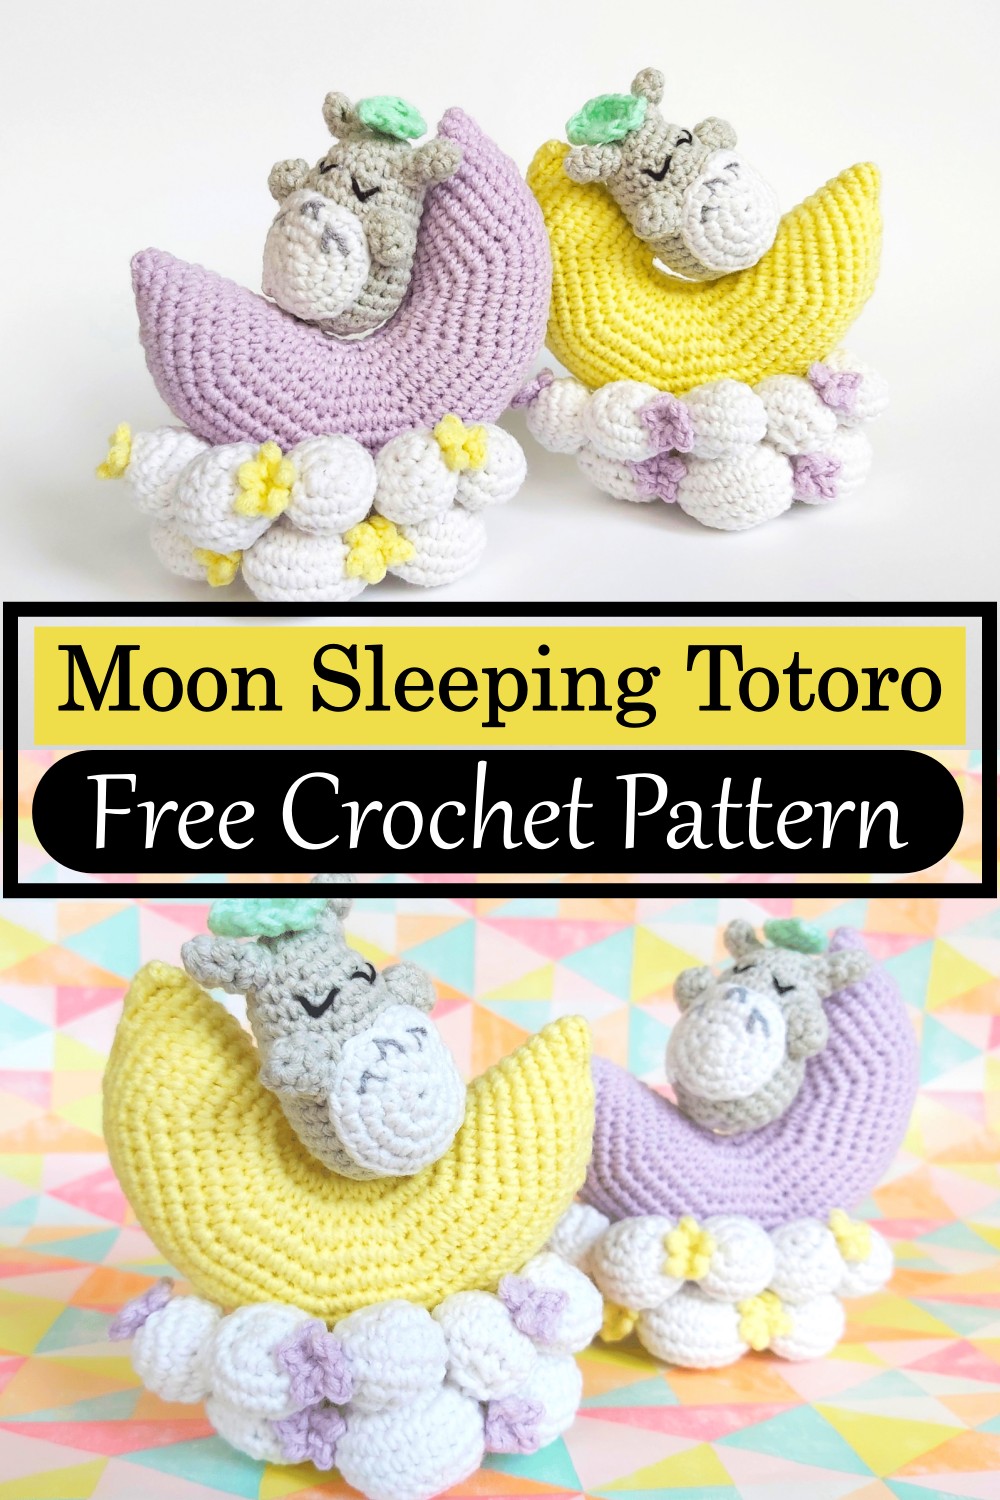 Moon Sleeping Totoro